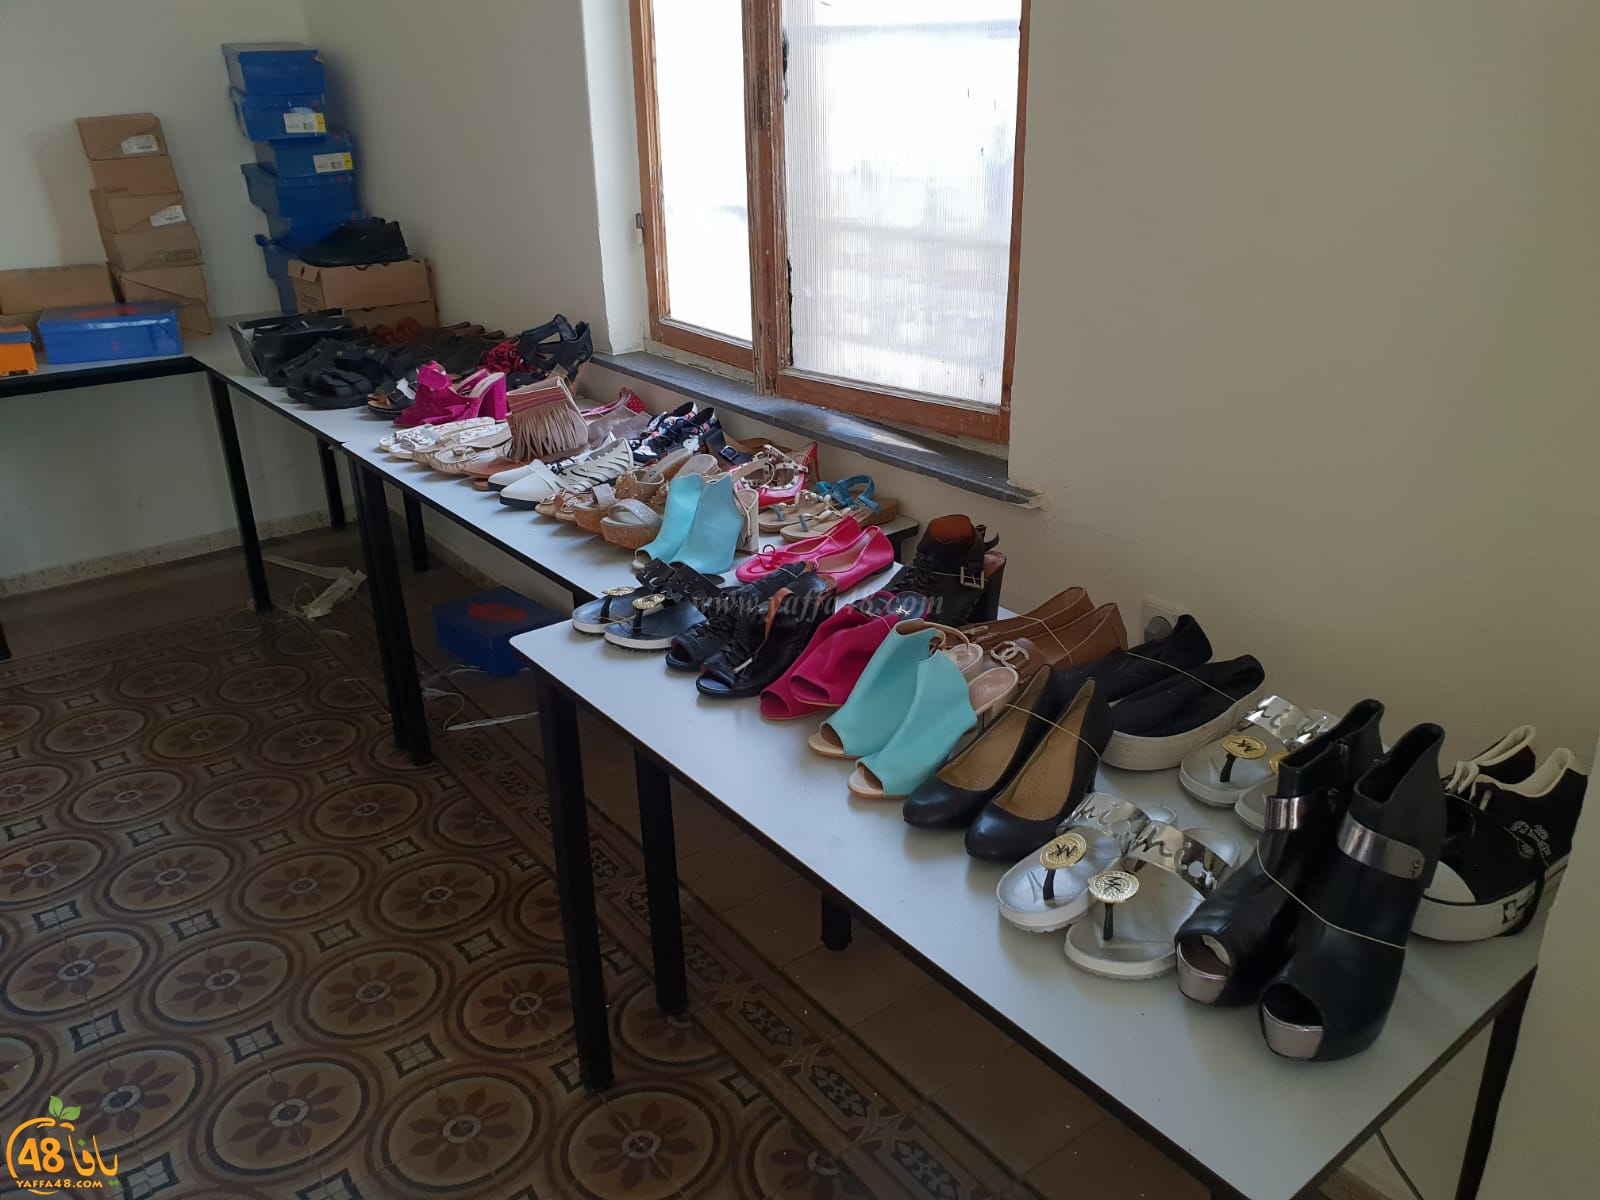 جمعية يافا تُنظم بازاراً خيرياً للأحذية في مكتبها وتدعو العائلات للحضور غداً الجمعة